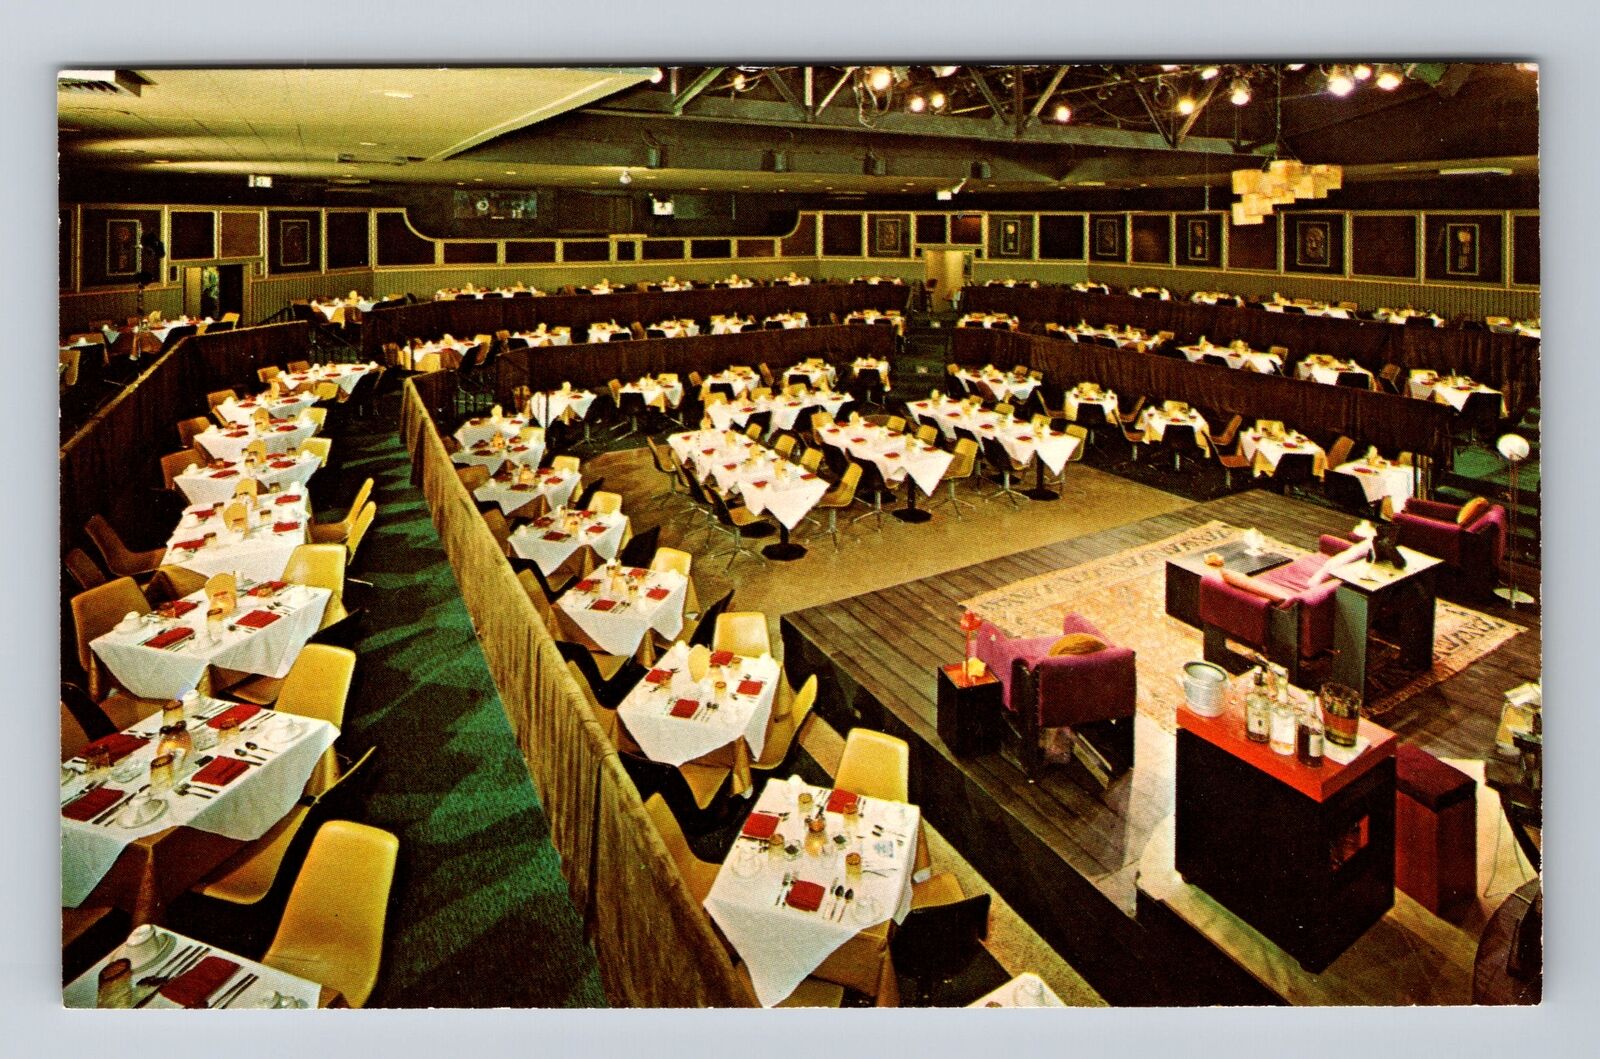 Sarasota FL-Florida, Golden Apple Dinner Theatre Antique Vintage Postcard